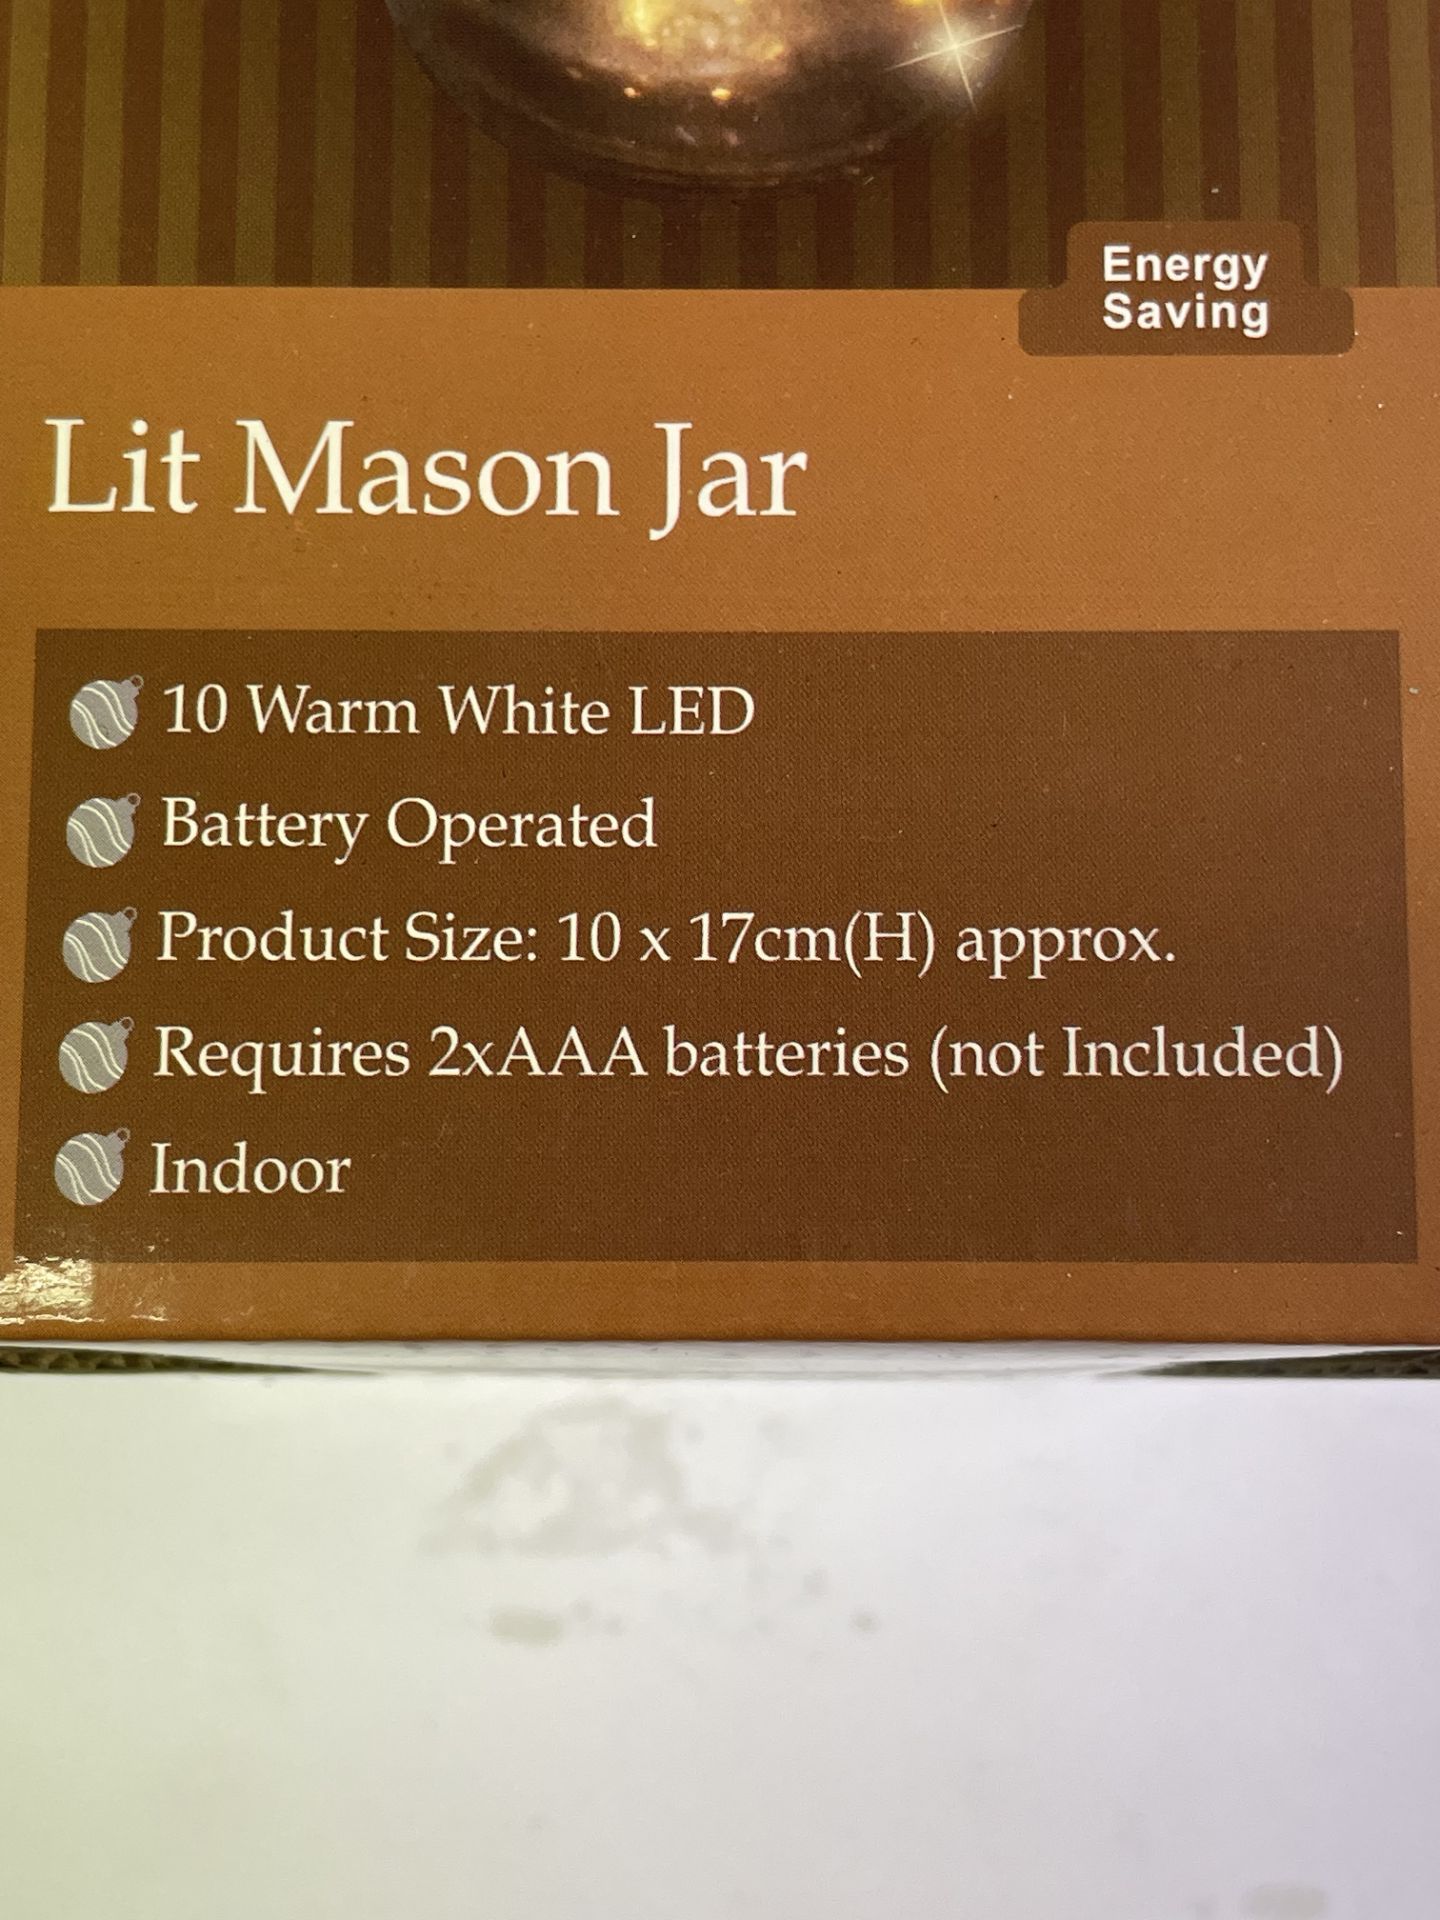 3 x Battery Operated Lit Mason jars - Image 2 of 2